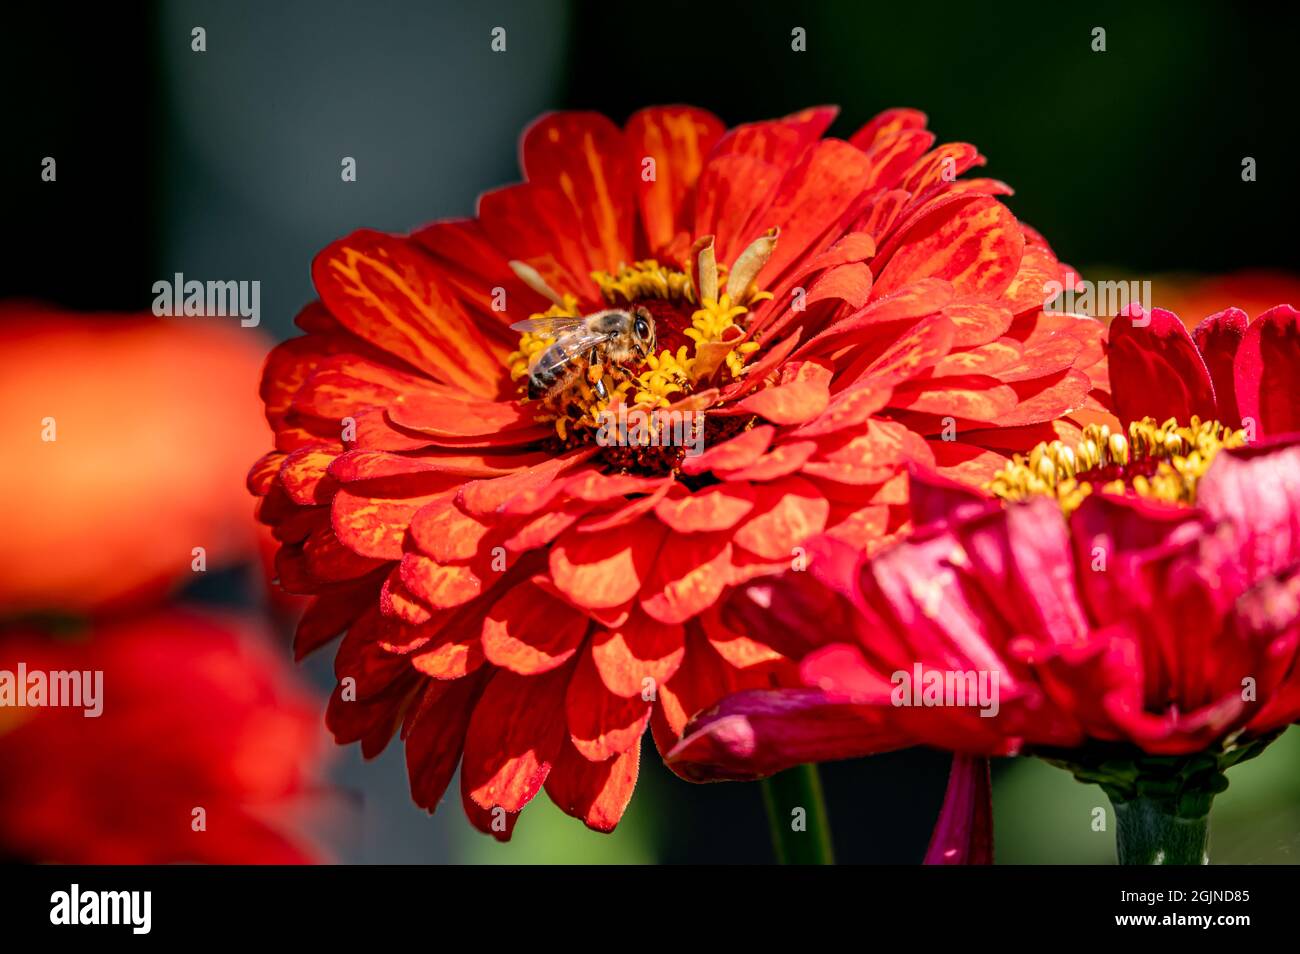 Biene auf einer Blume. Rote Dahlia-Blume. Europäische Honigbiene. APIs mellifera in der Schweiz. Biodiversität. Stockfoto